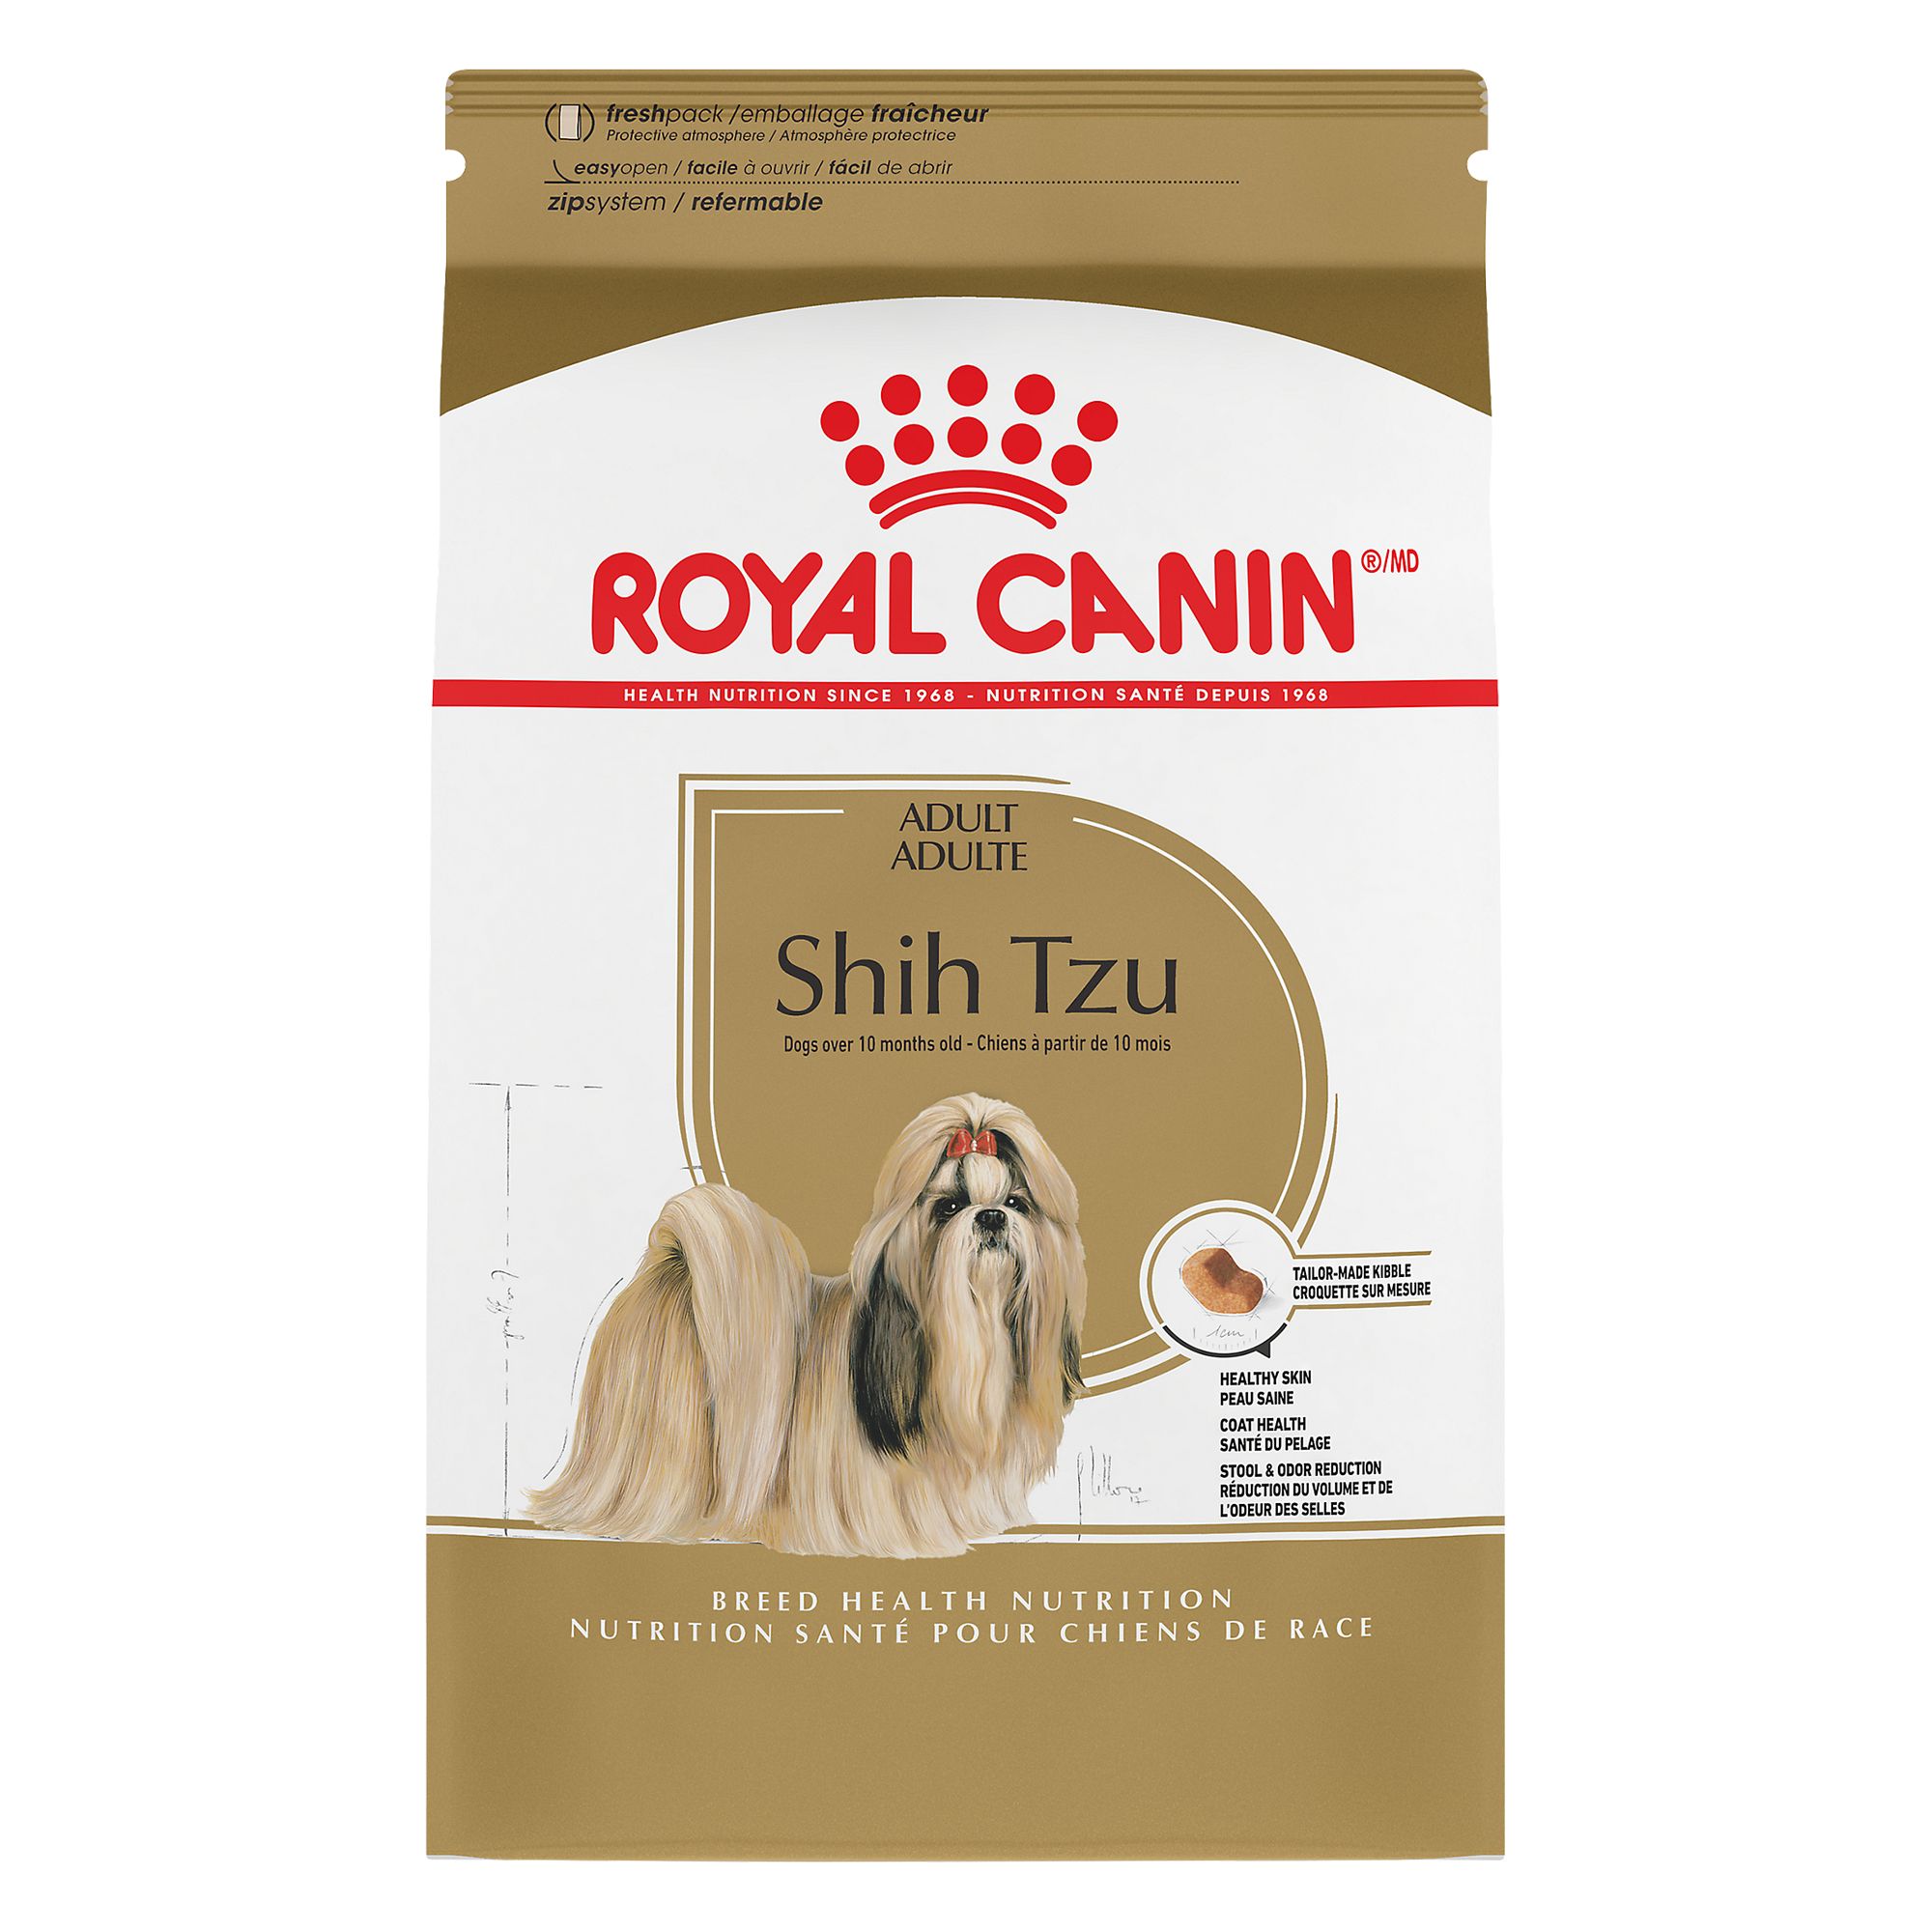 best dog food for shih tzu